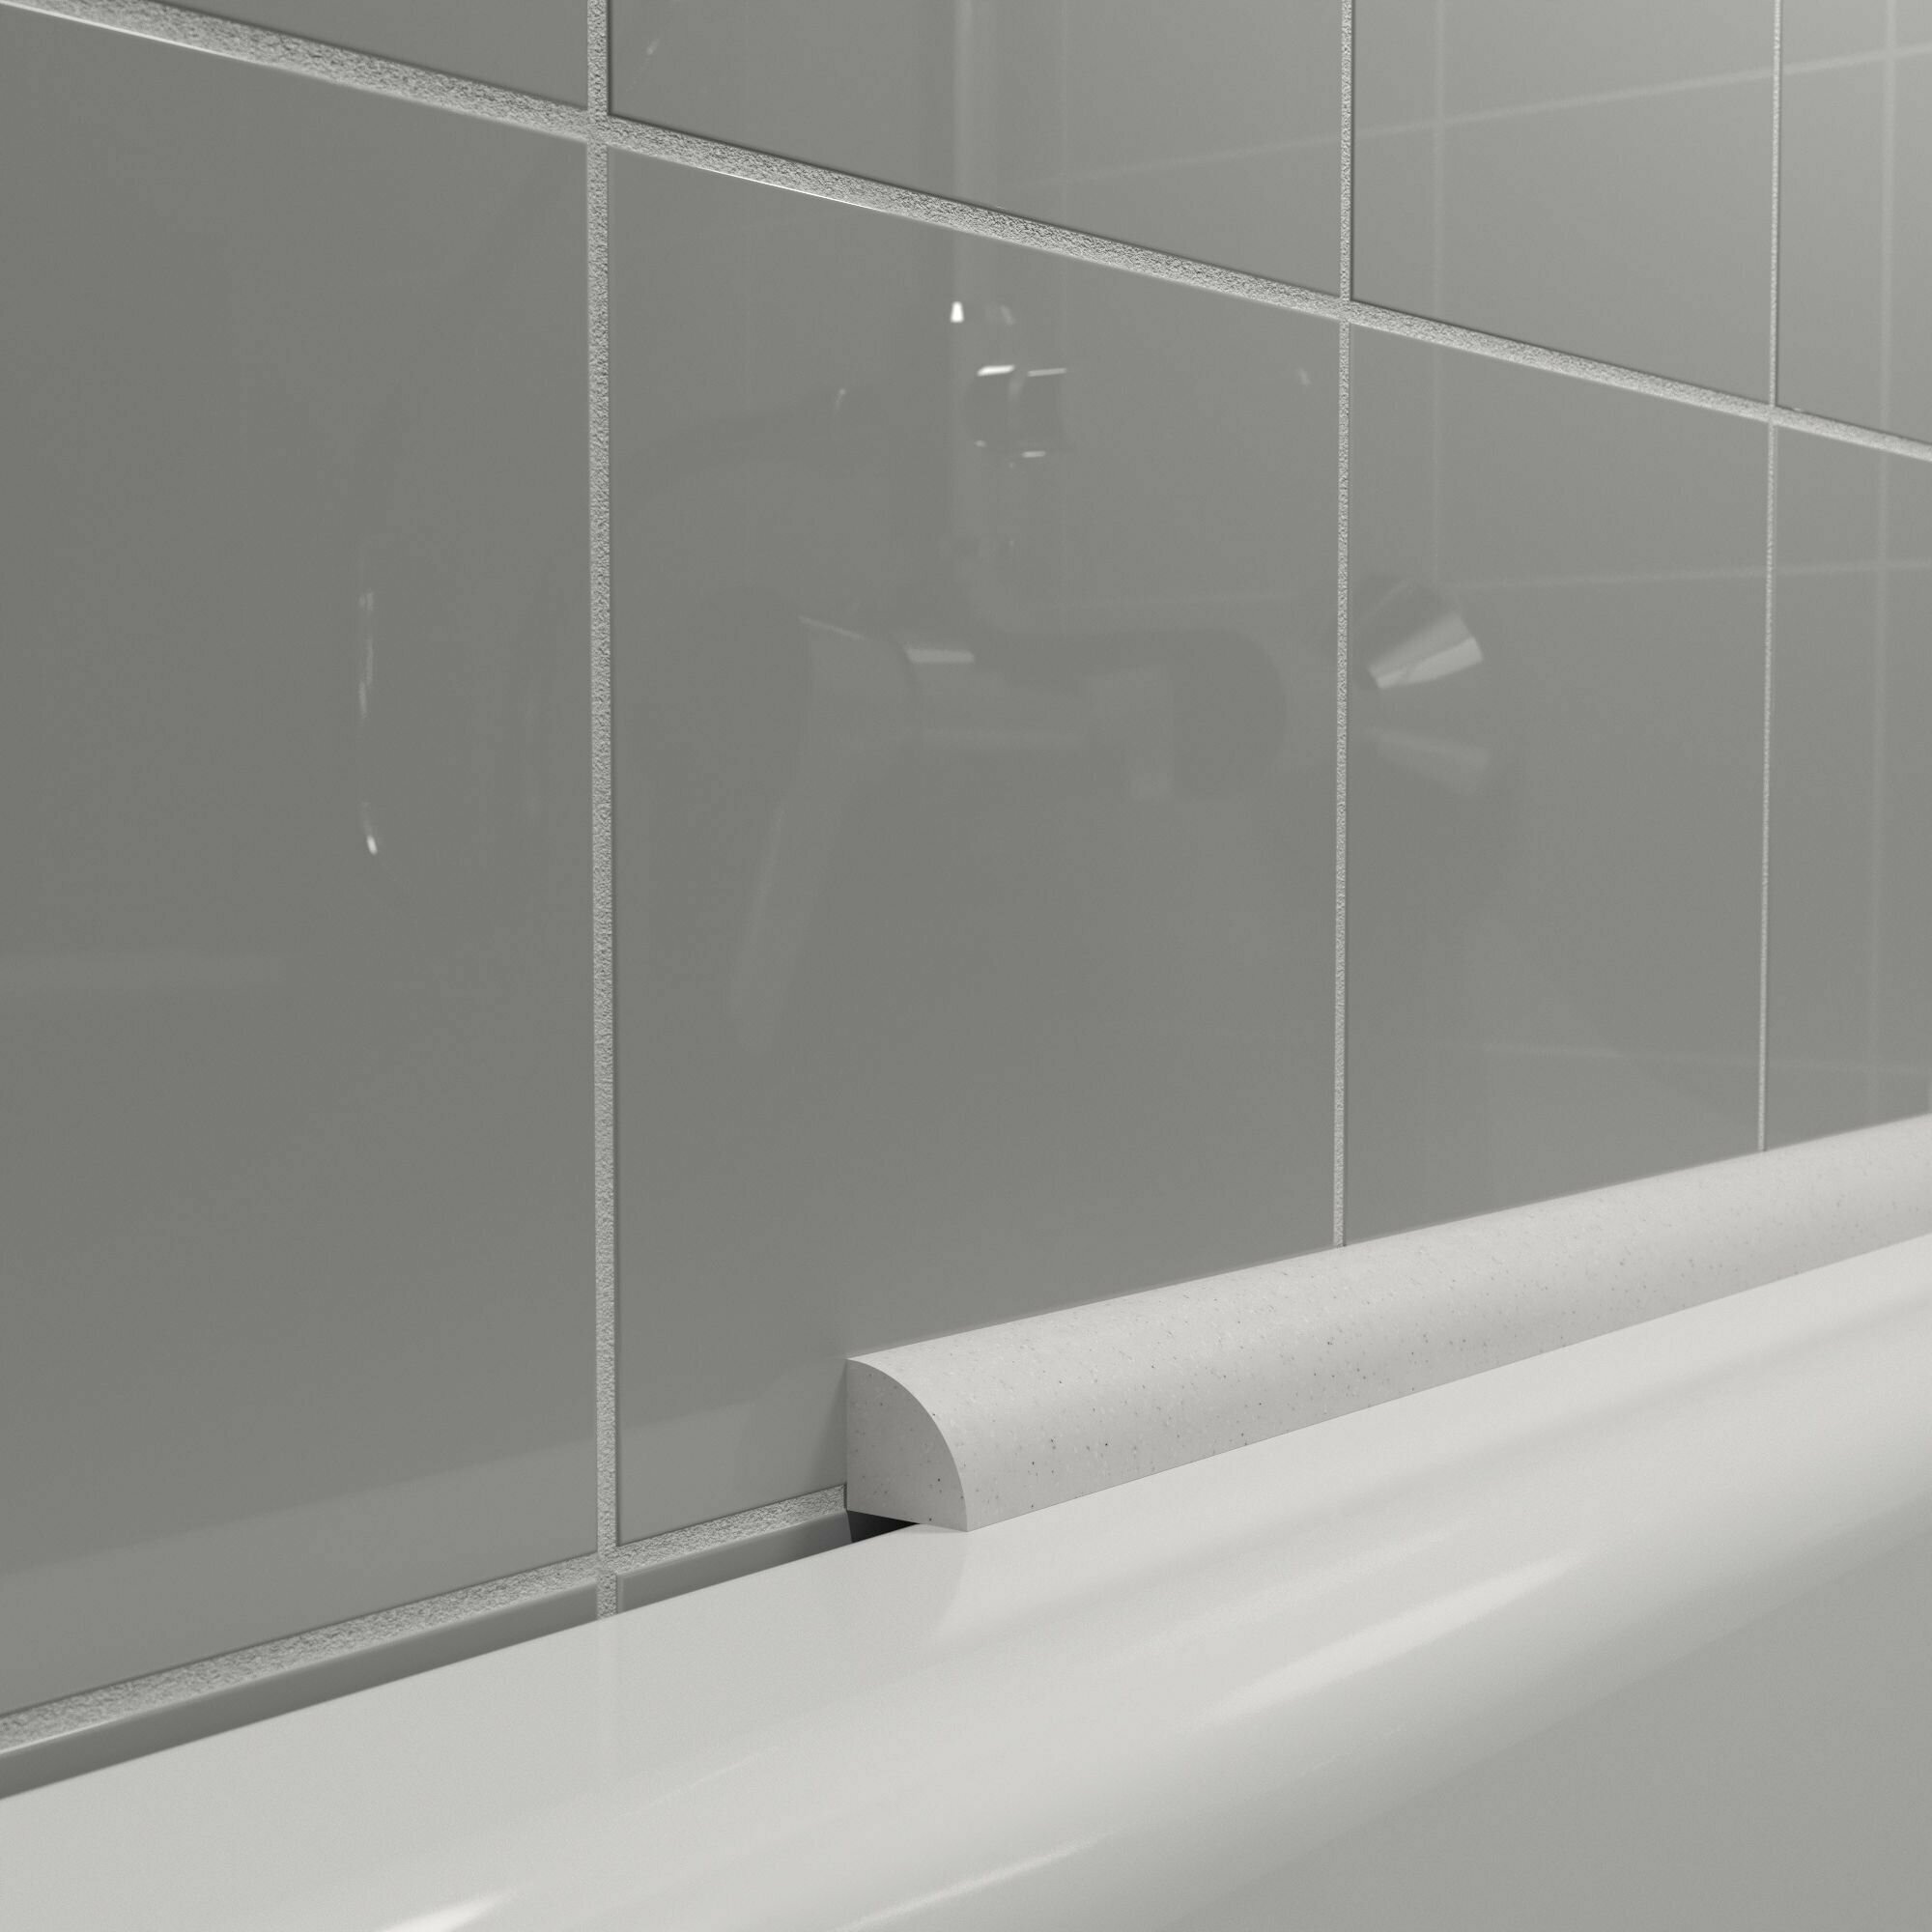 Акриловый Плинтус бордюр для ванной BNV ПШ12 180 сантиметров, серый цвет, глянцевая поверхность